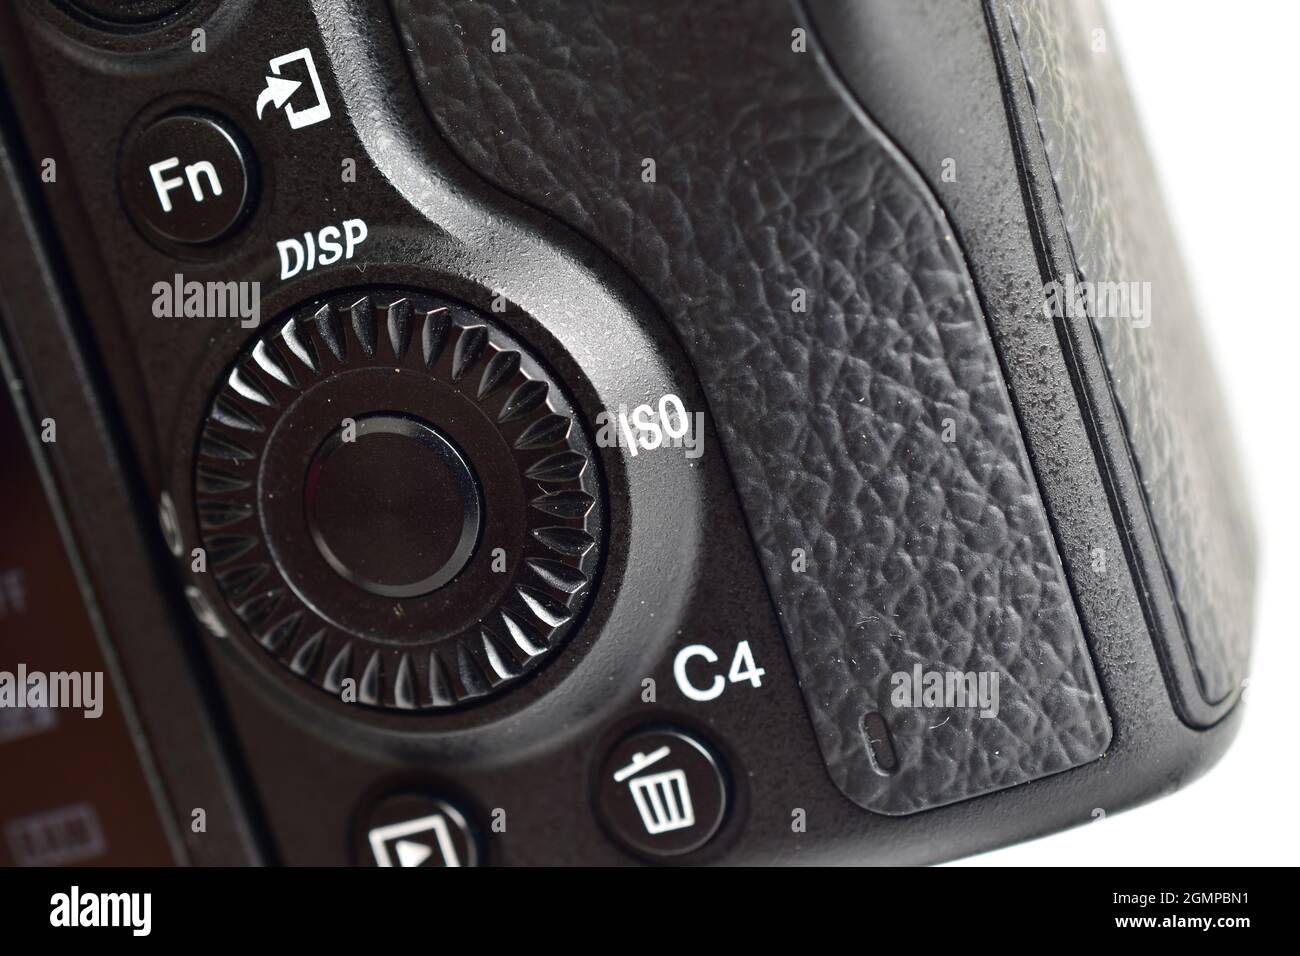 Manopola rotante e pulsante Fn sulla fotocamera Foto Stock